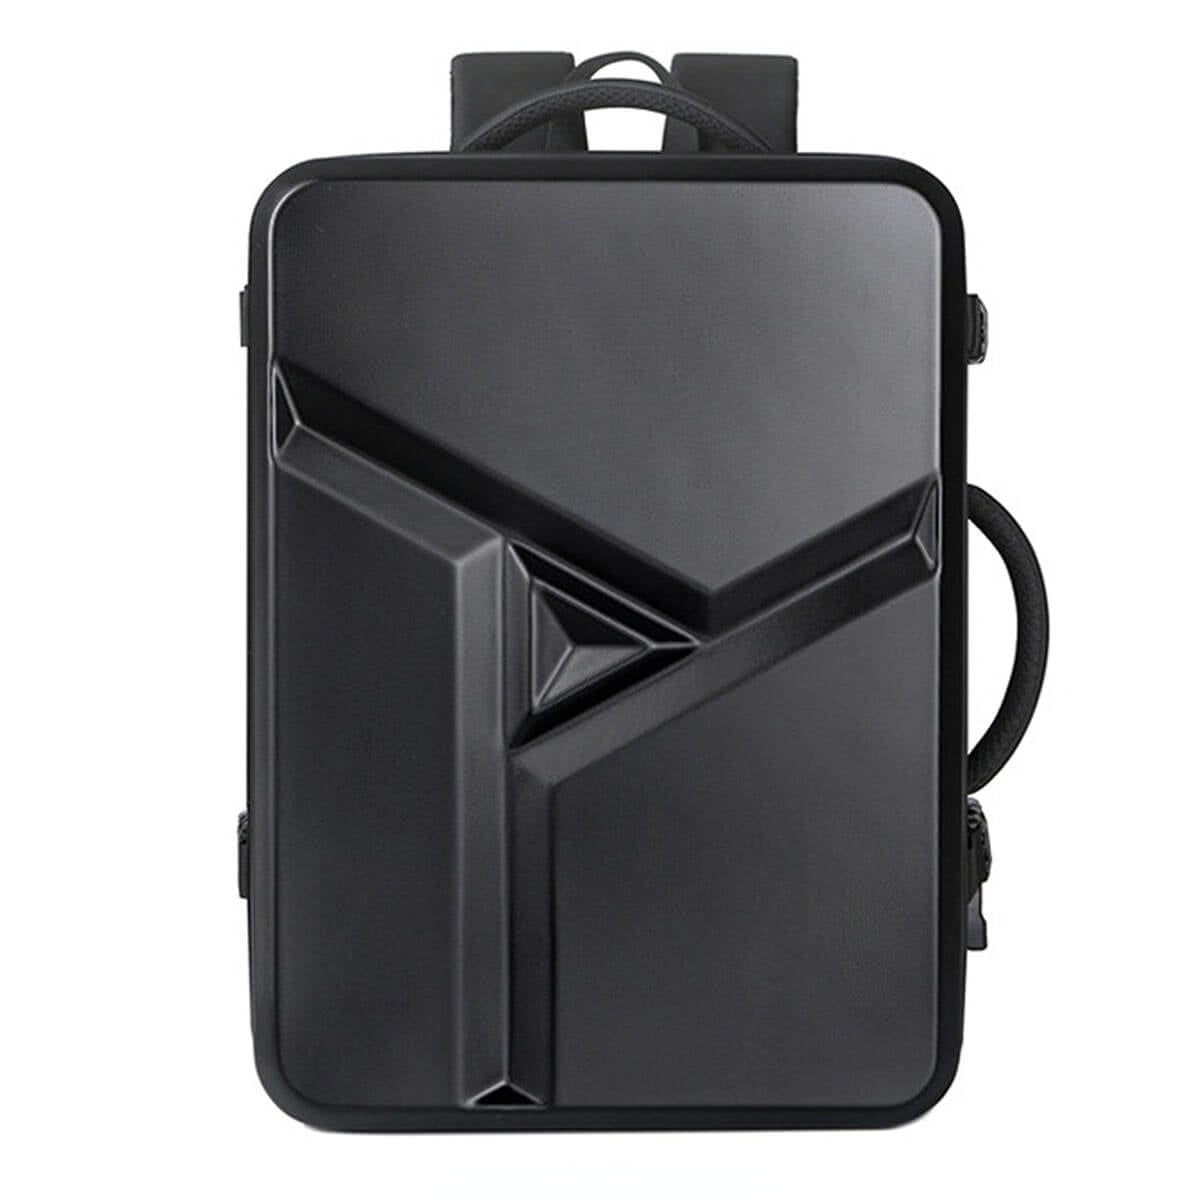 Large Capacity Waterproof ABS Travel Multifunctional Backpack